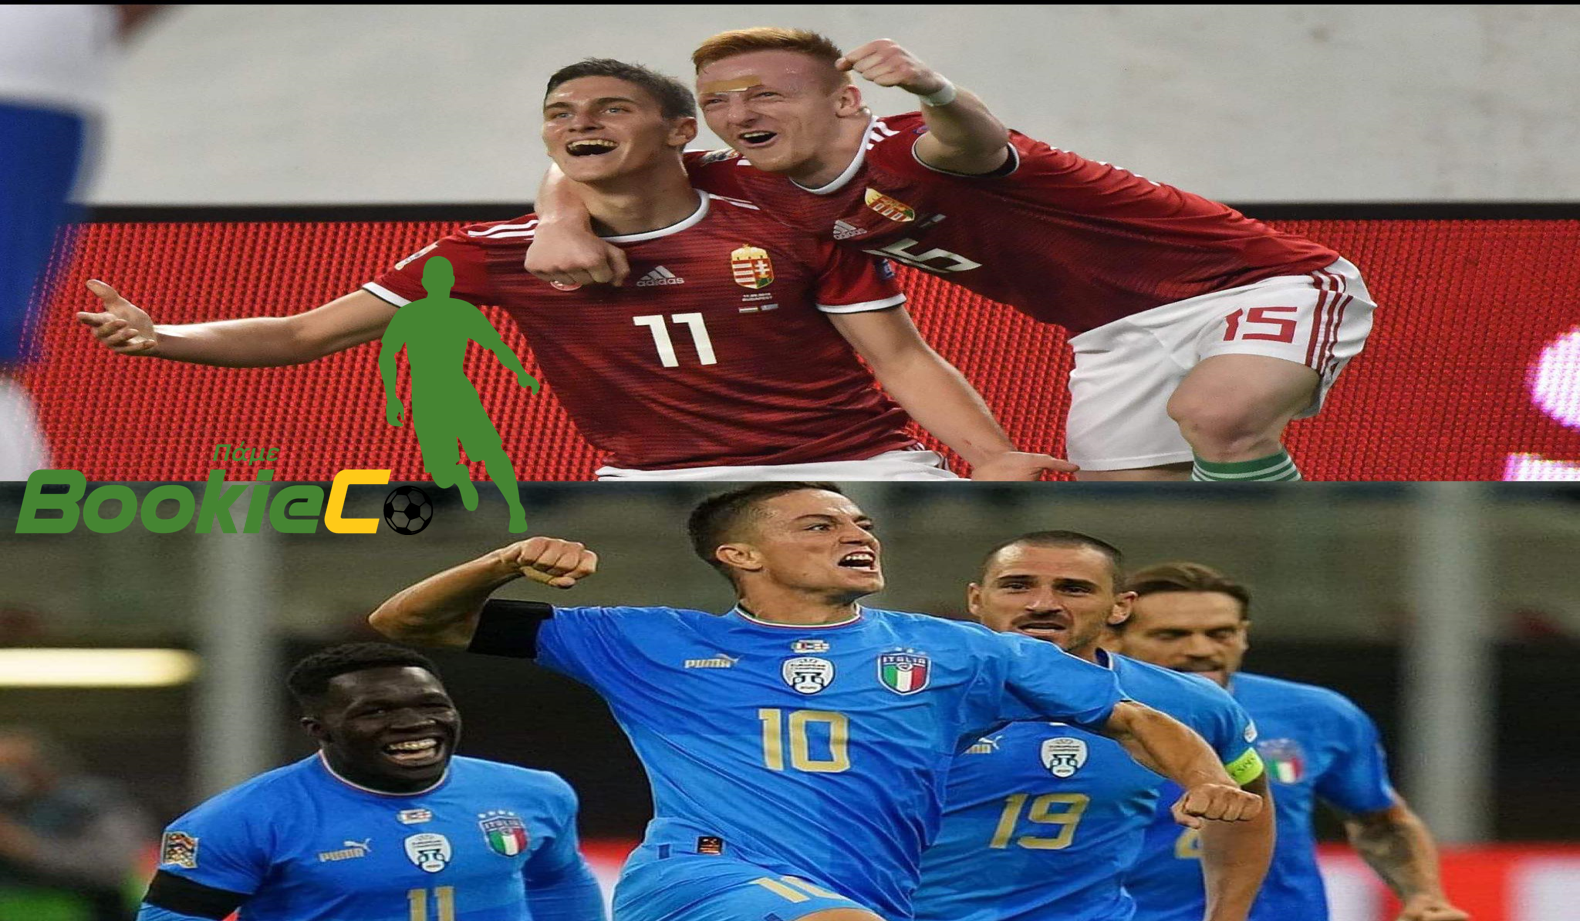 Σούπερ ματς για την πρωτιά ανάμεσα σε Ουγγαρία-Ιταλία (Όλο το πρόγραμμα και οι αμέτρητες επιλογές στην “ΒookieCo”)